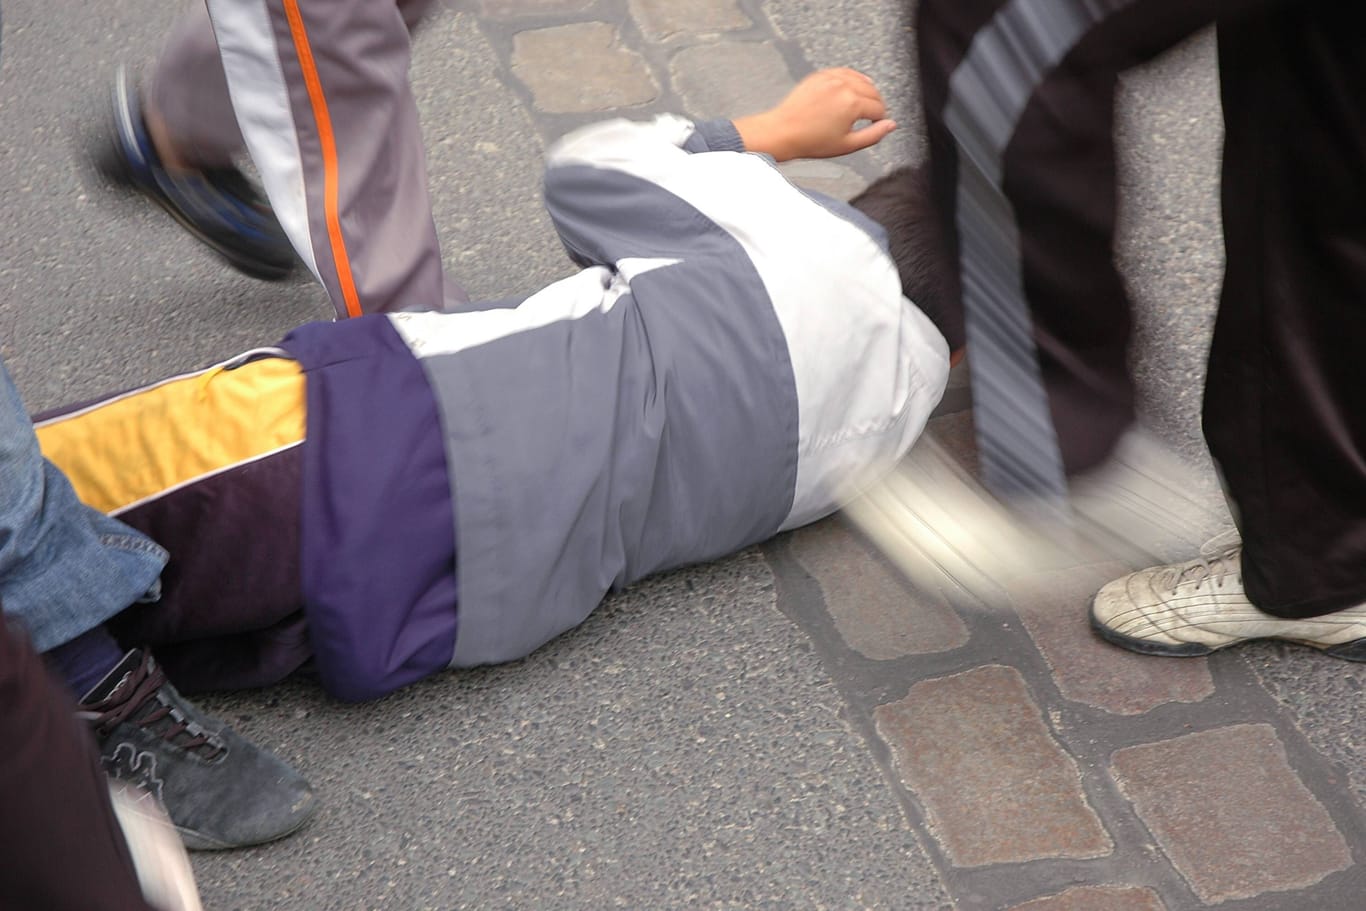 Am Boden liegender Jugendlicher wird getreten (Symbolbild): Auch Kinder begehen teils schwere Straftaten.